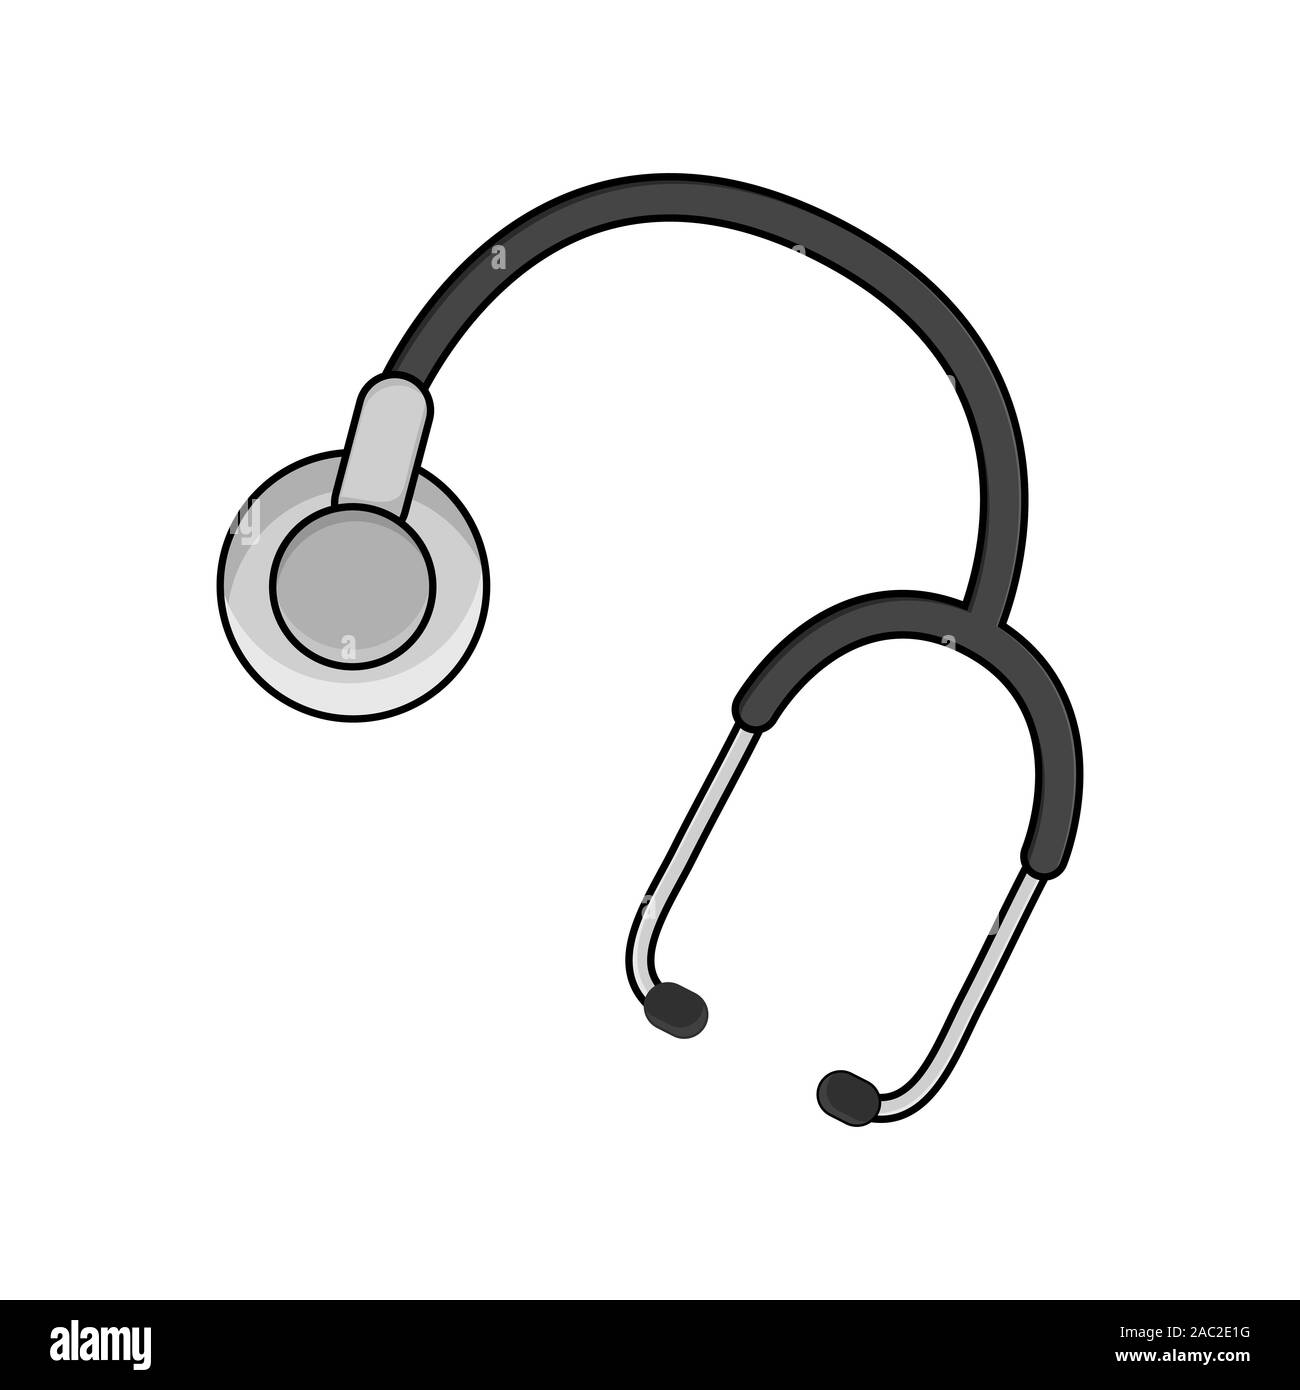 Stethoskop Vektor isoliert Cartoon. Medizinische Behandlung instrument Symbol, Medizin Ausrüstung auf weißem Hintergrund Stock Vektor